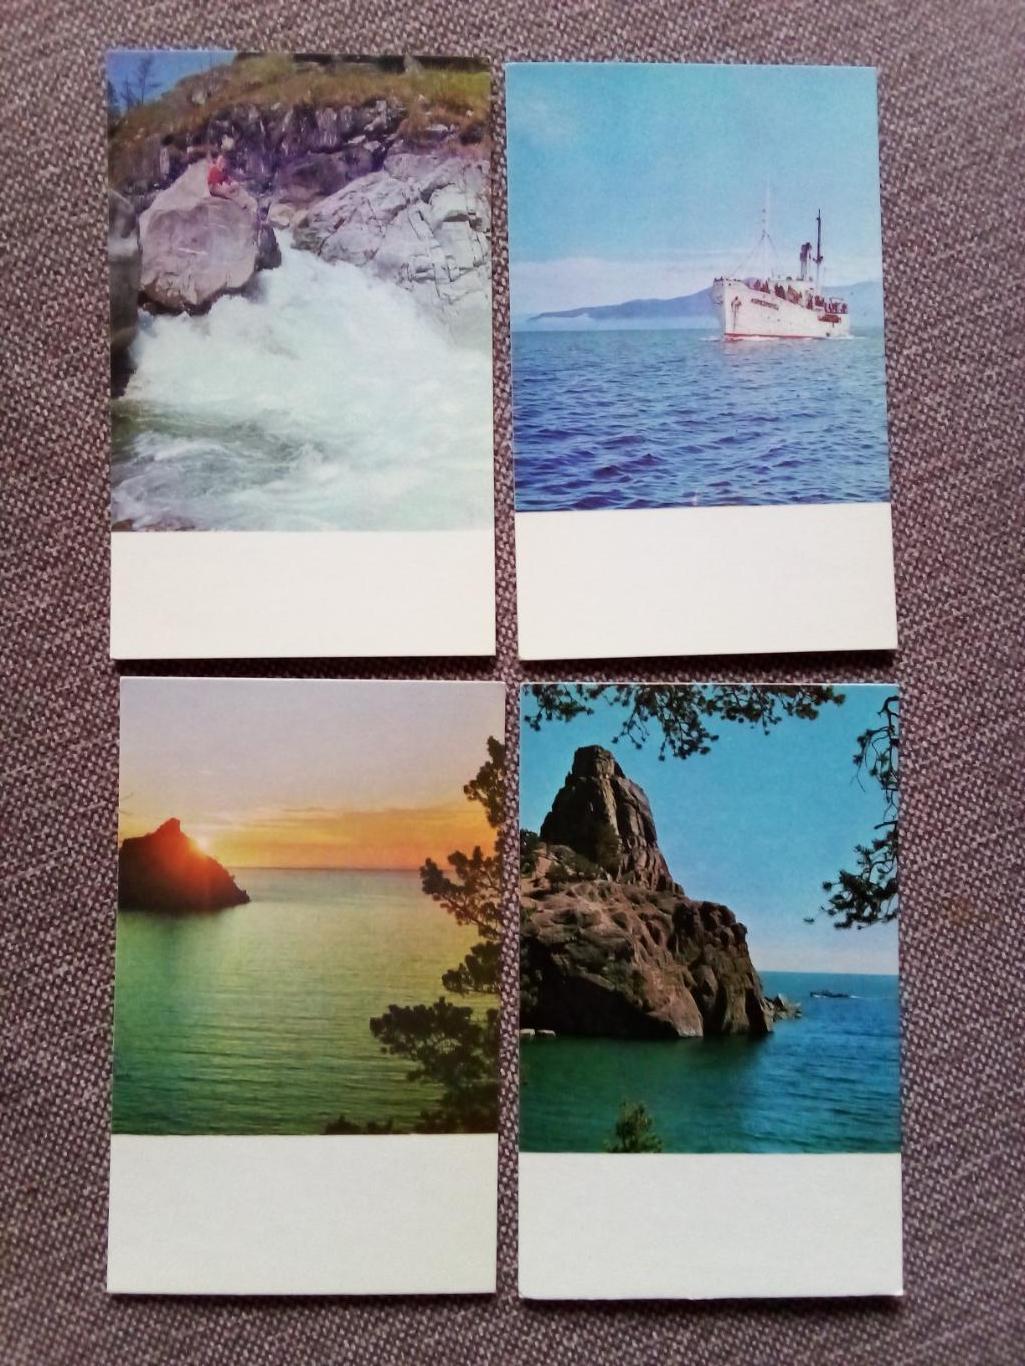 Памятные места СССР : Озеро Байкал 1971 г. полный набор - 15 открыток (чистые) 3